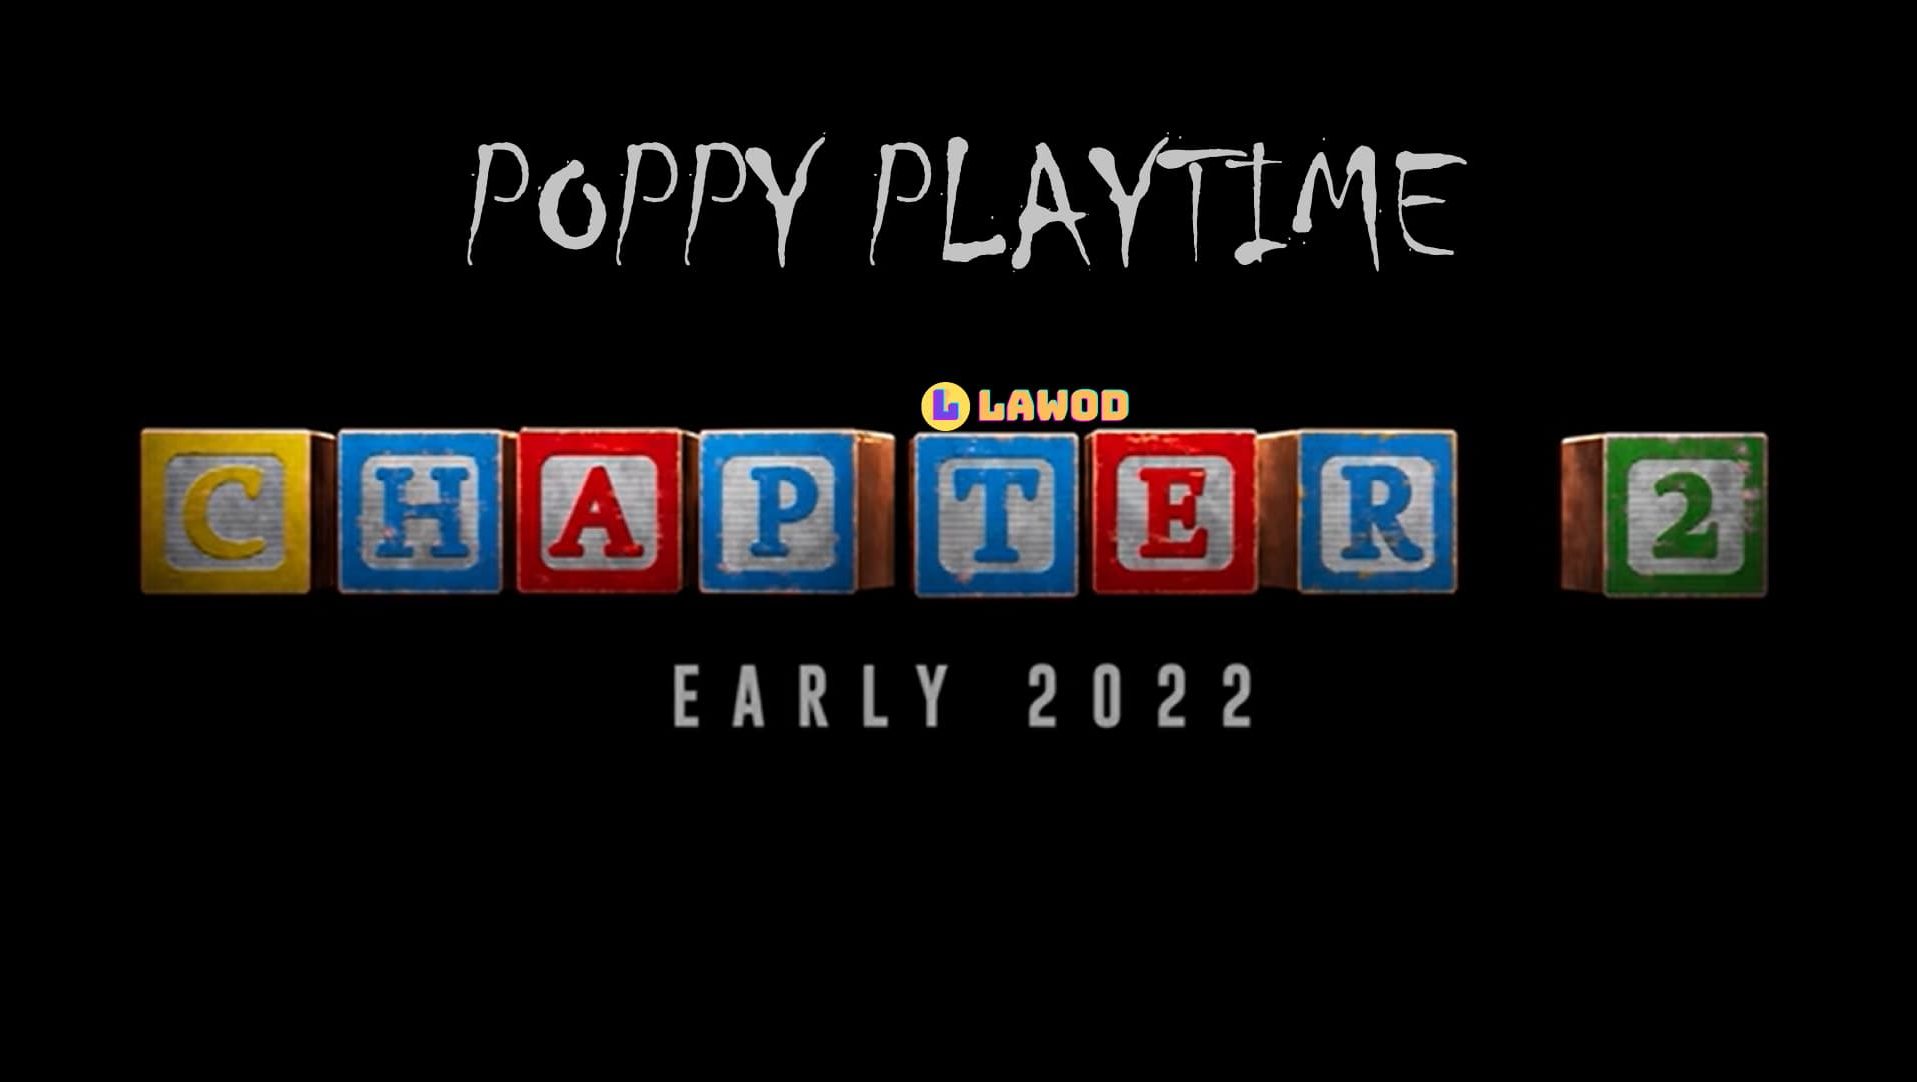 Poppy playtime 2 mob